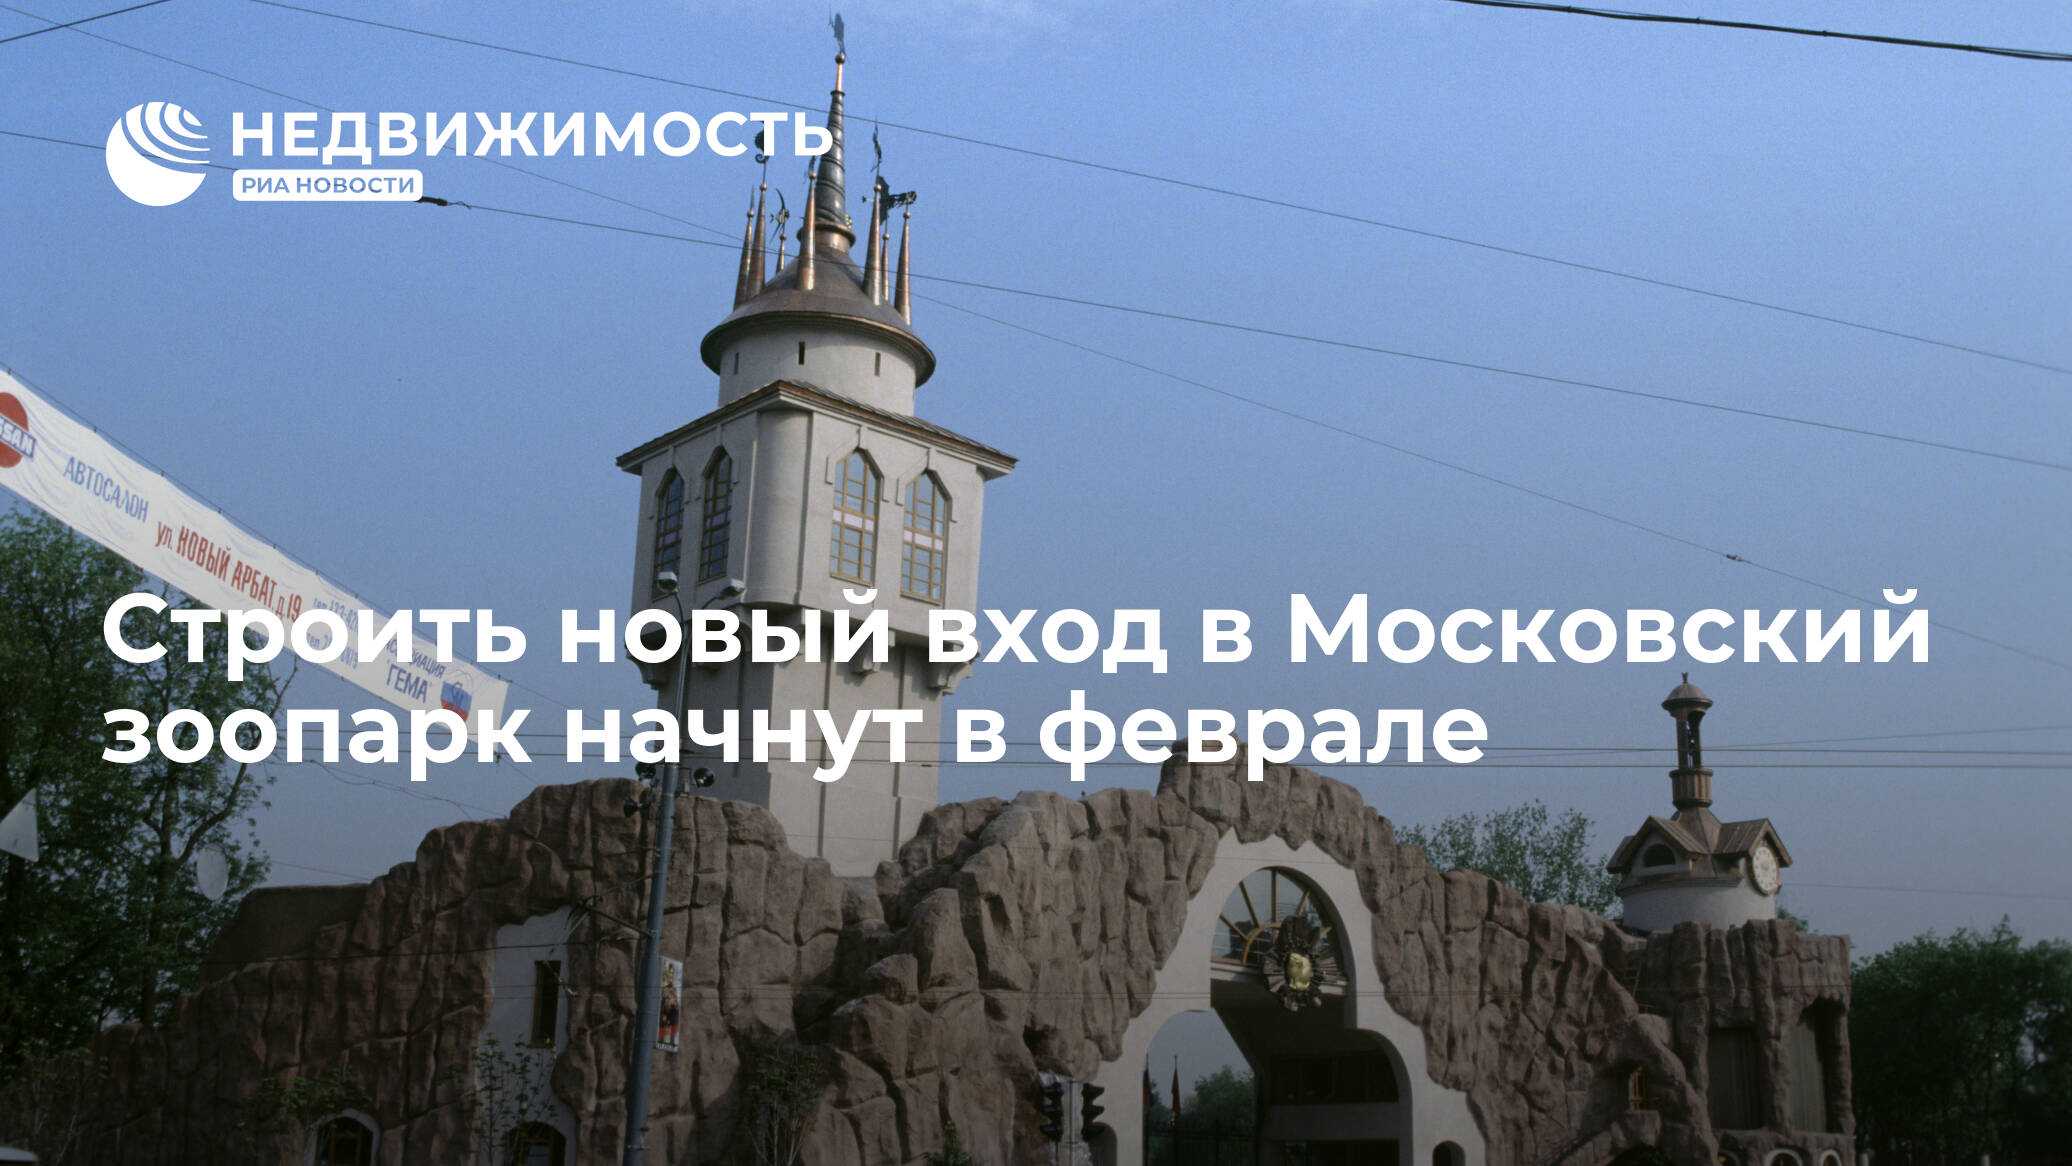 Московский зоопарк – описание, экспозиции, маршруты